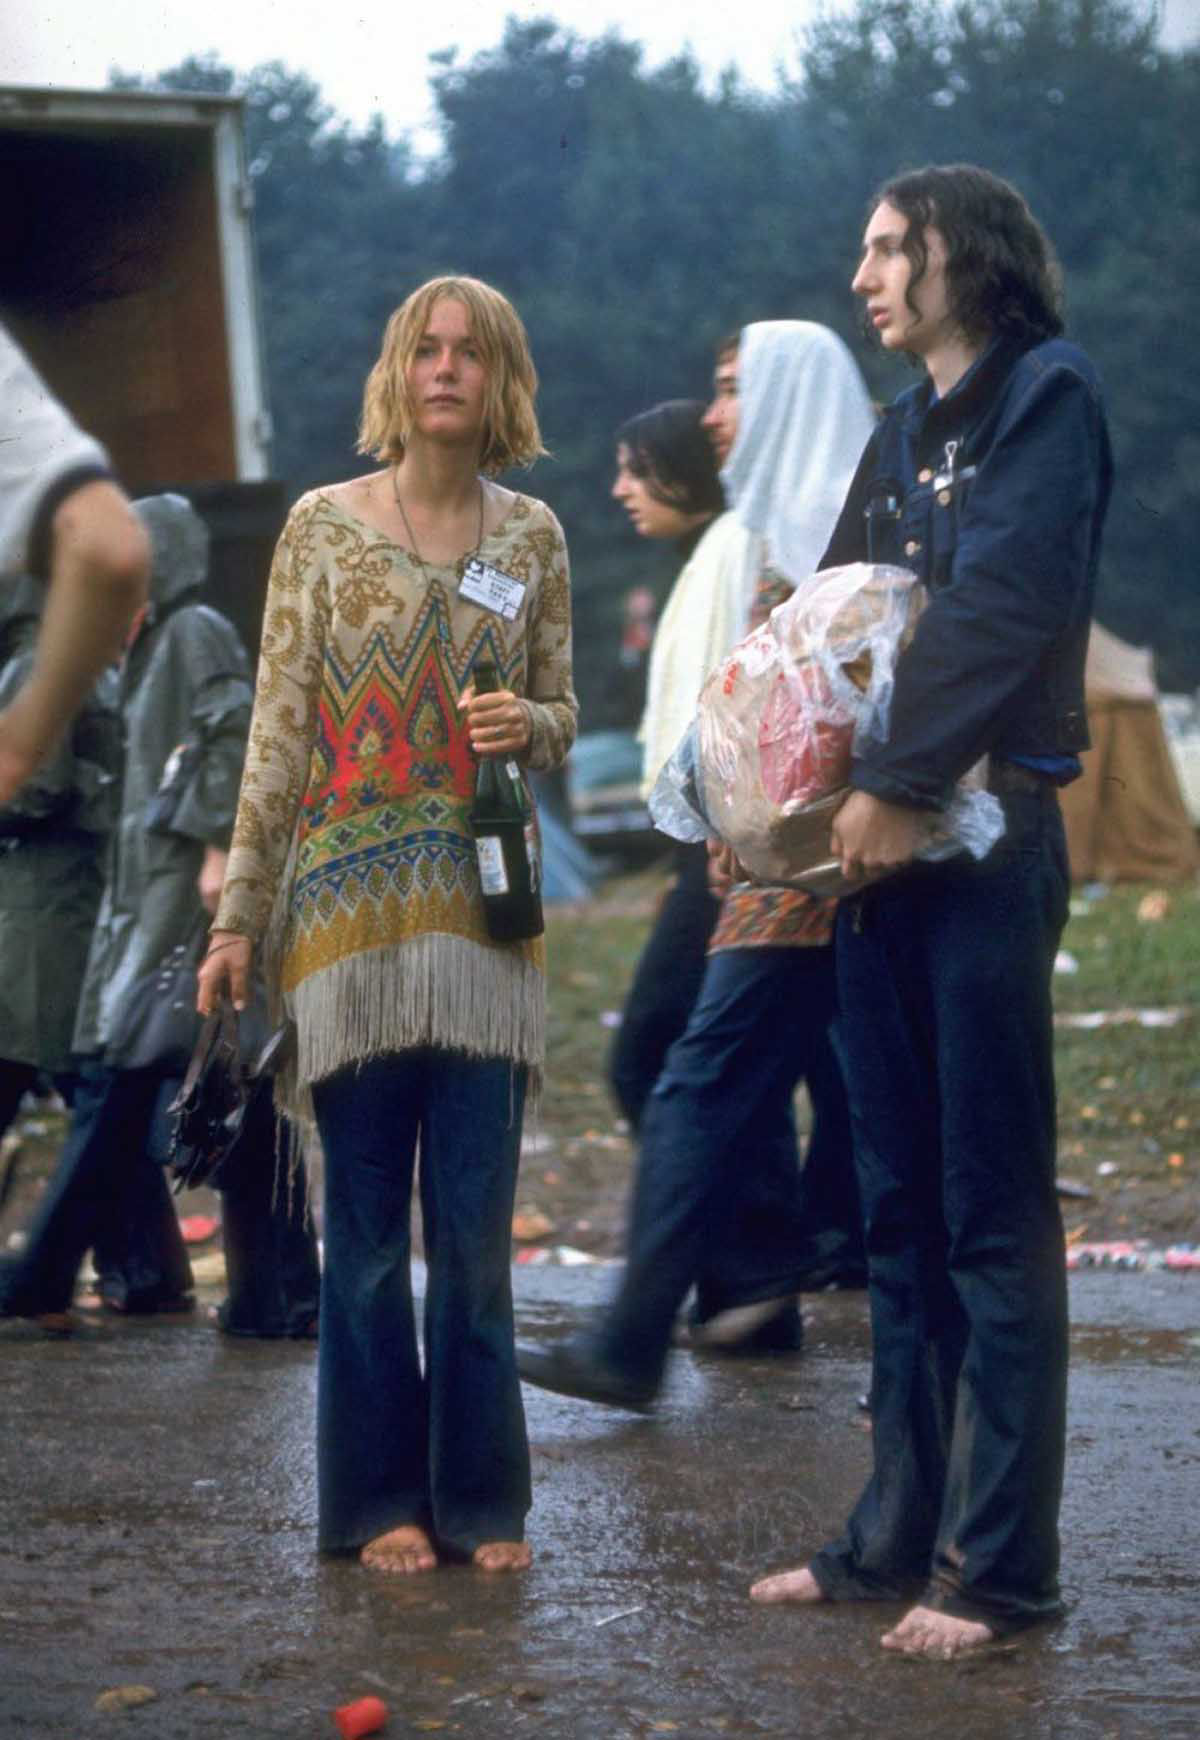 Fotos impressionantes retratam a moda rebelde de Woodstock em 1969 04